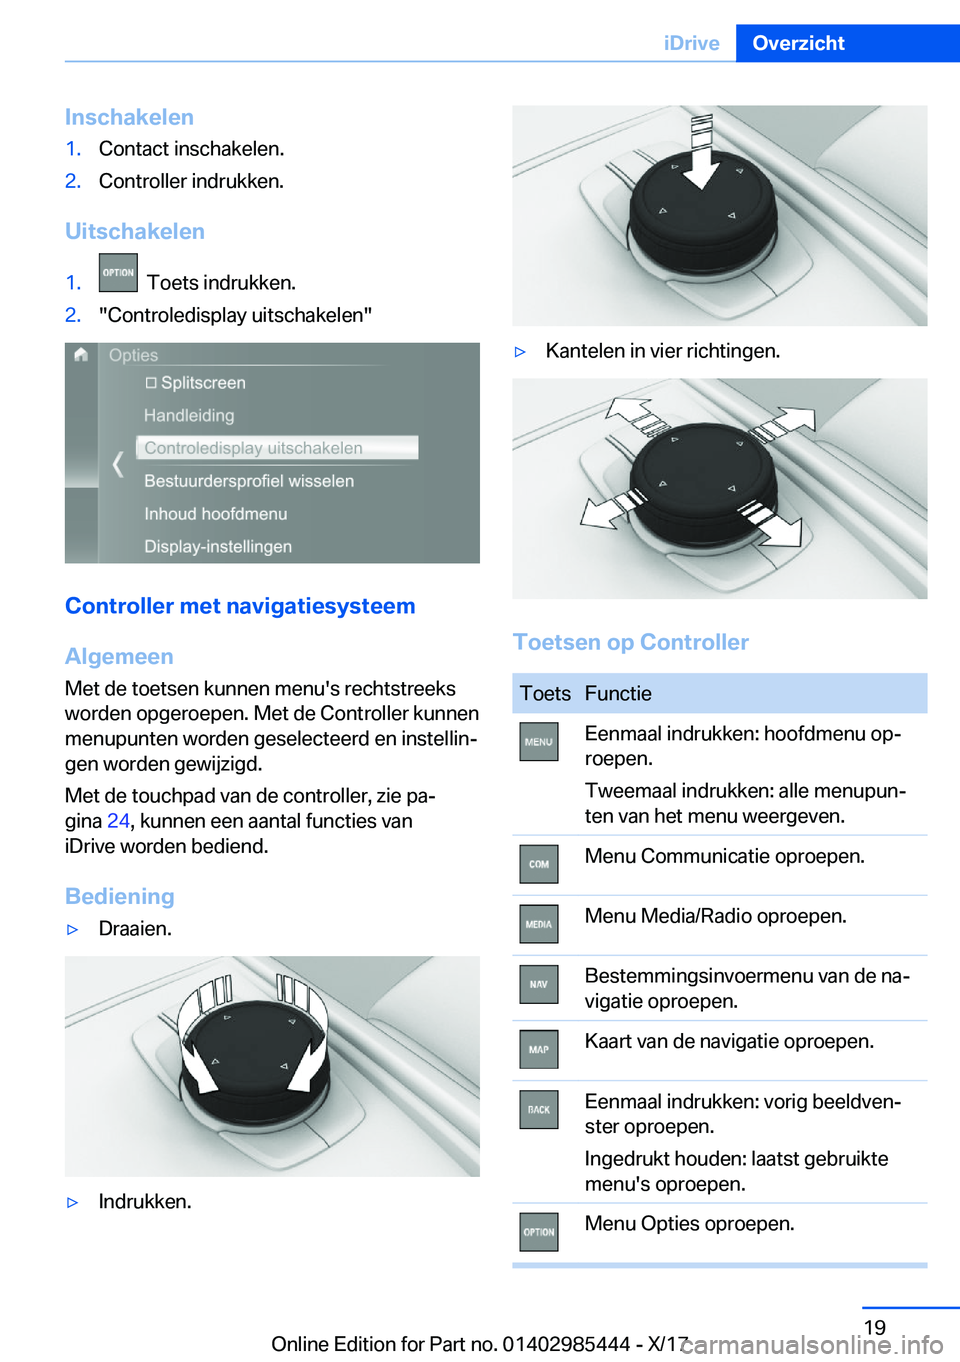 BMW X1 2018  Instructieboekjes (in Dutch) �I�n�s�c�h�a�k�e�l�e�n�1�.�C�o�n�t�a�c�t� �i�n�s�c�h�a�k�e�l�e�n�.�2�.�C�o�n�t�r�o�l�l�e�r� �i�n�d�r�u�k�k�e�n�.
�U�i�t�s�c�h�a�k�e�l�e�n
�1�.� � �T�o�e�t�s� �i�n�d�r�u�k�k�e�n�.�2�.�"�C�o�n�t�r�o